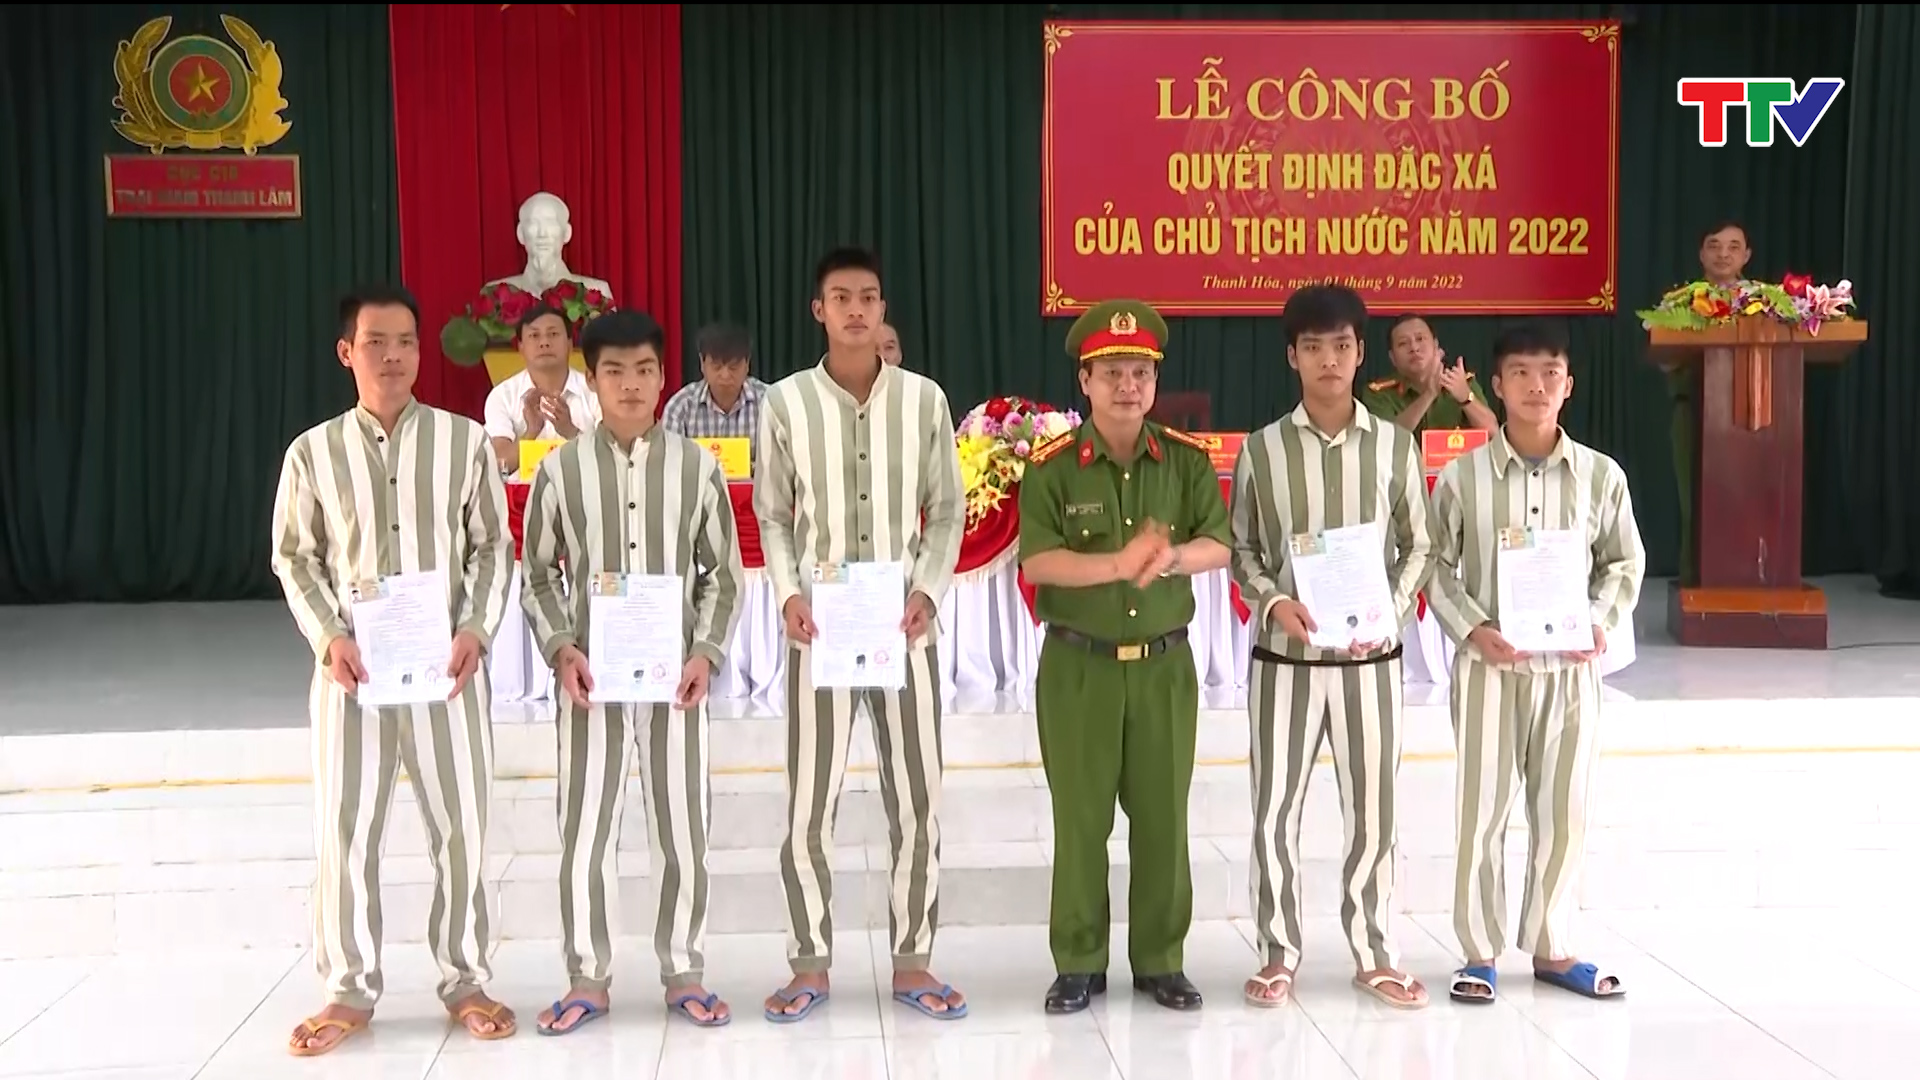 Trại giam Thanh Lâm công bố quyết định đặc xá của Chủ tịch nước - Ảnh 2.